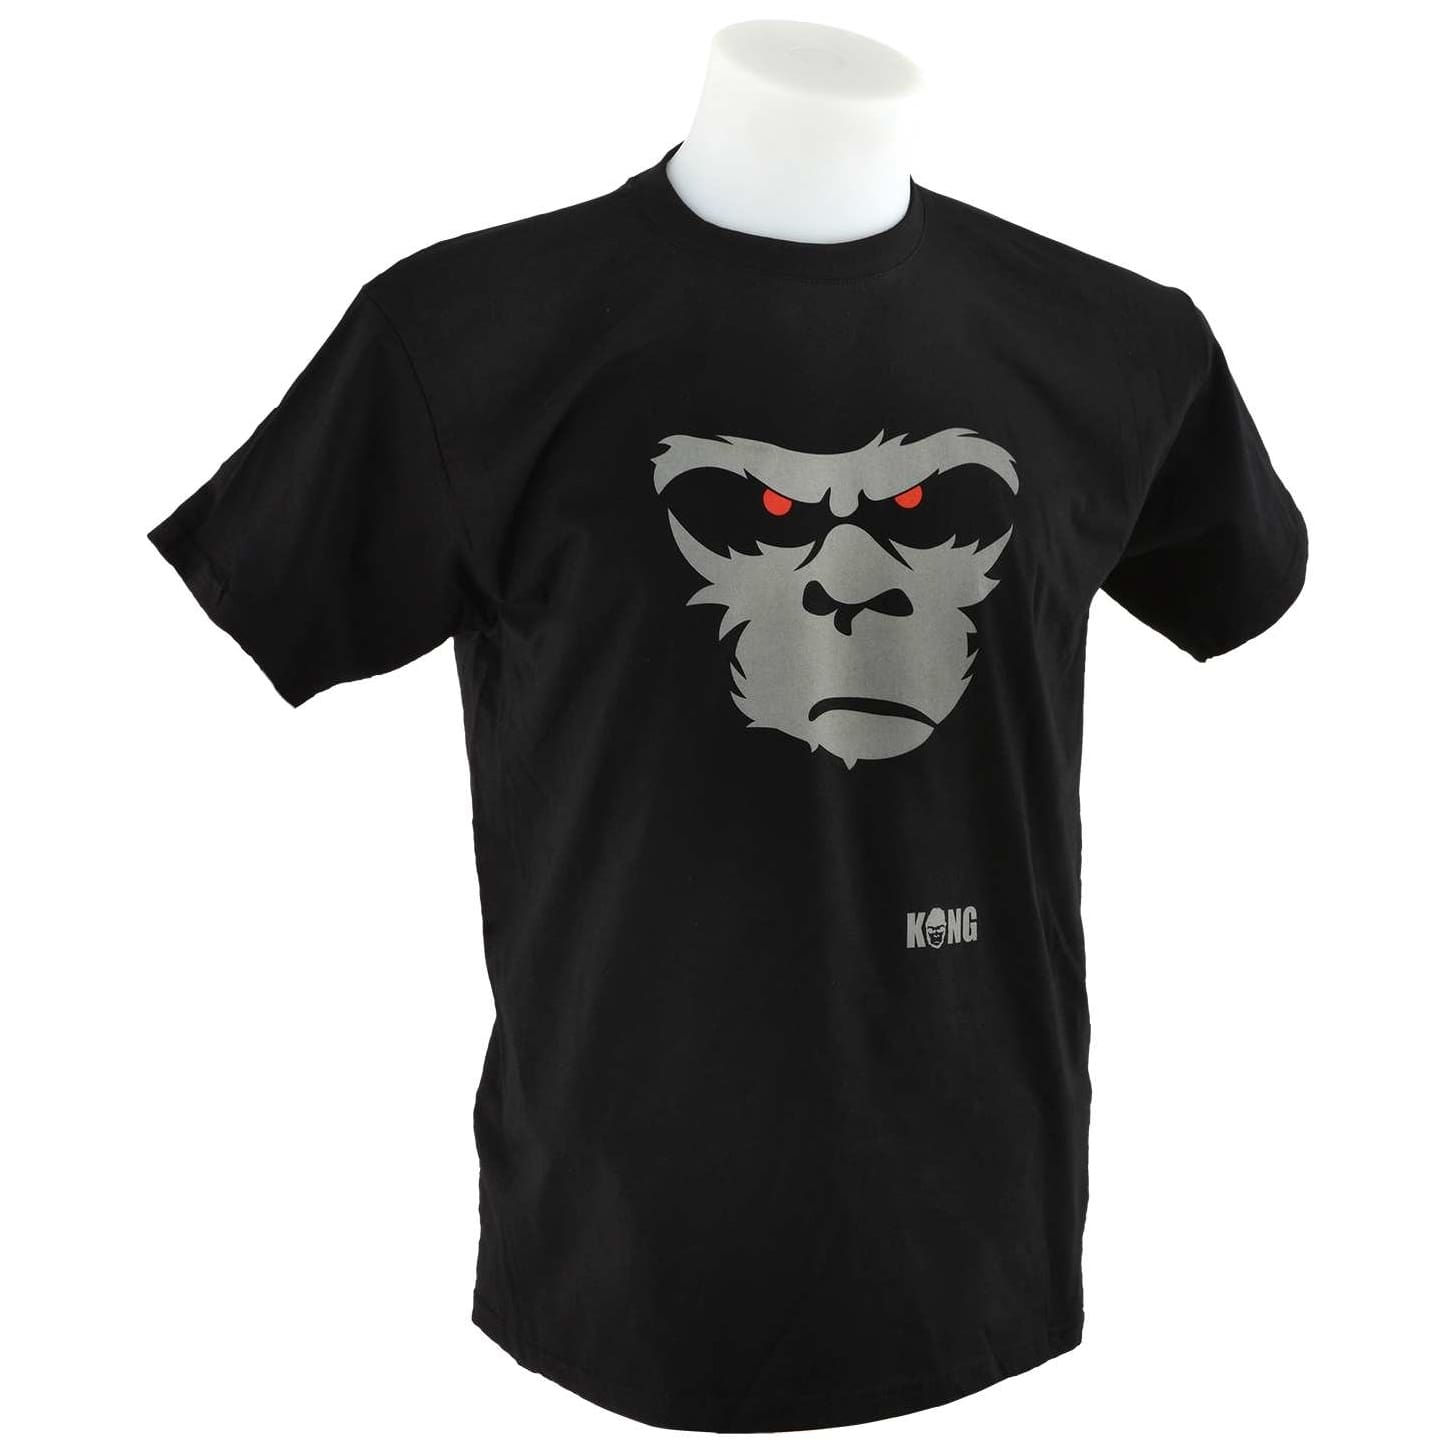 Kong Shirt BLK - M